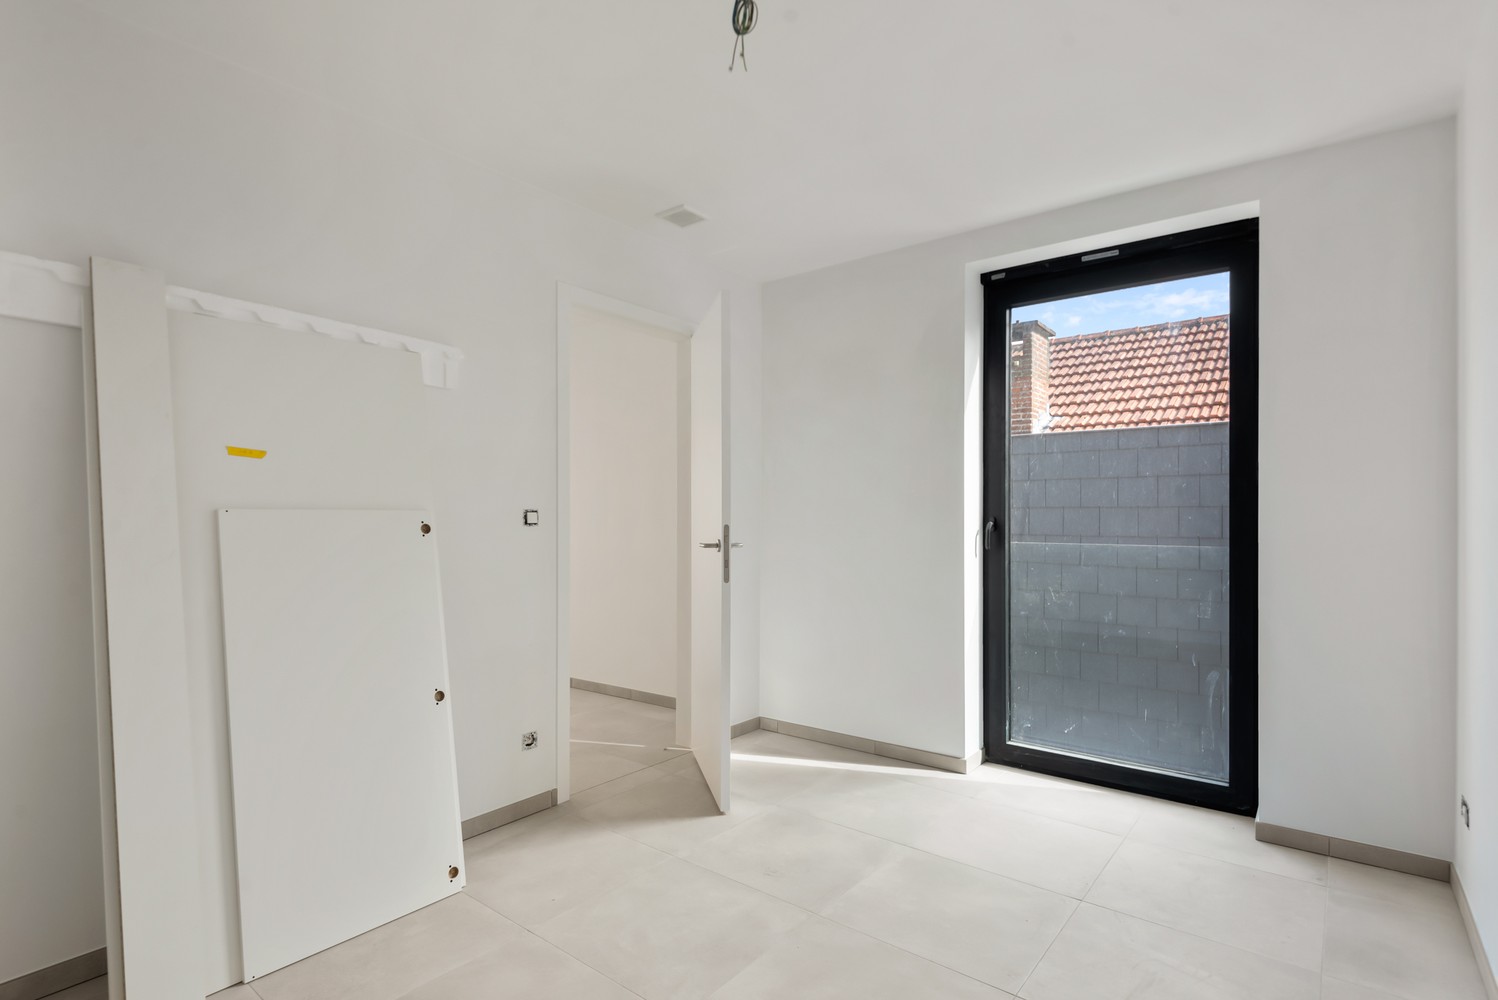 Licht en functioneel appartement (+/-77,60m²) met 1 slaapkamer en een terras (+/-7,1m²)! afbeelding 5